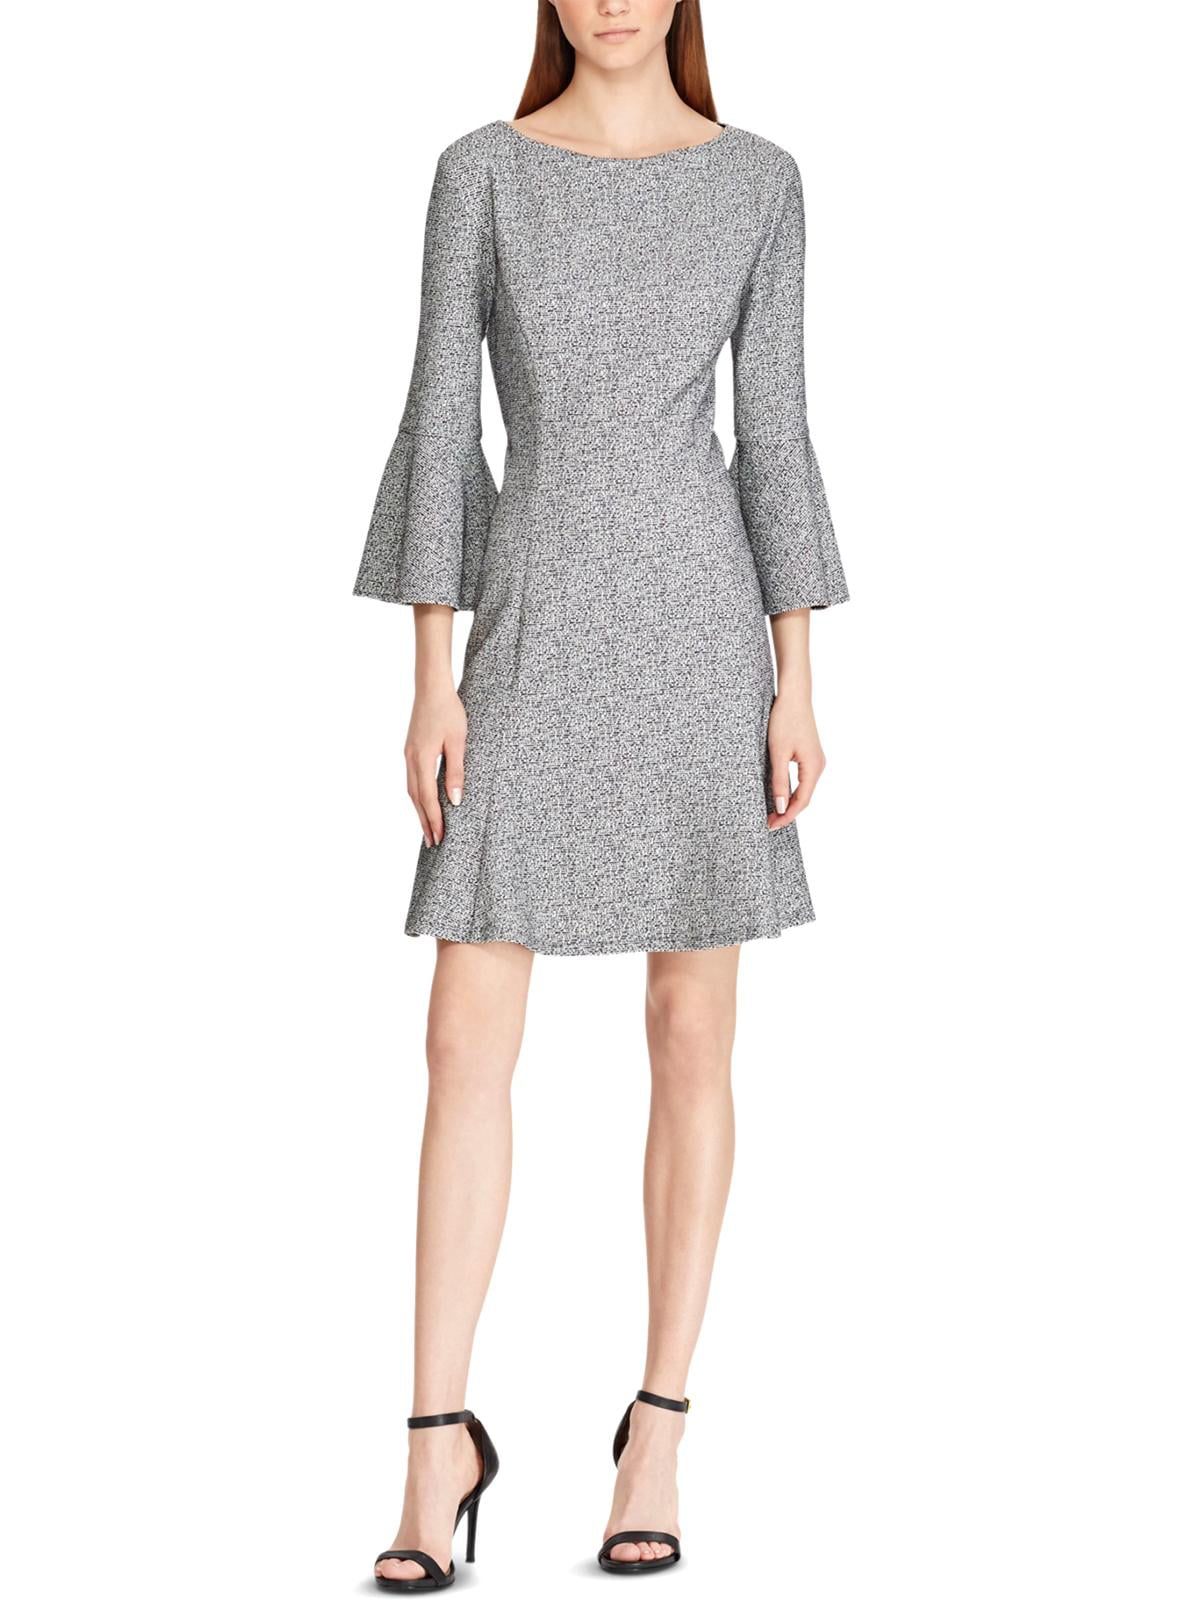 American Living Womens Leelee Tweed Bell Sleeves Wear to Work Dress ...